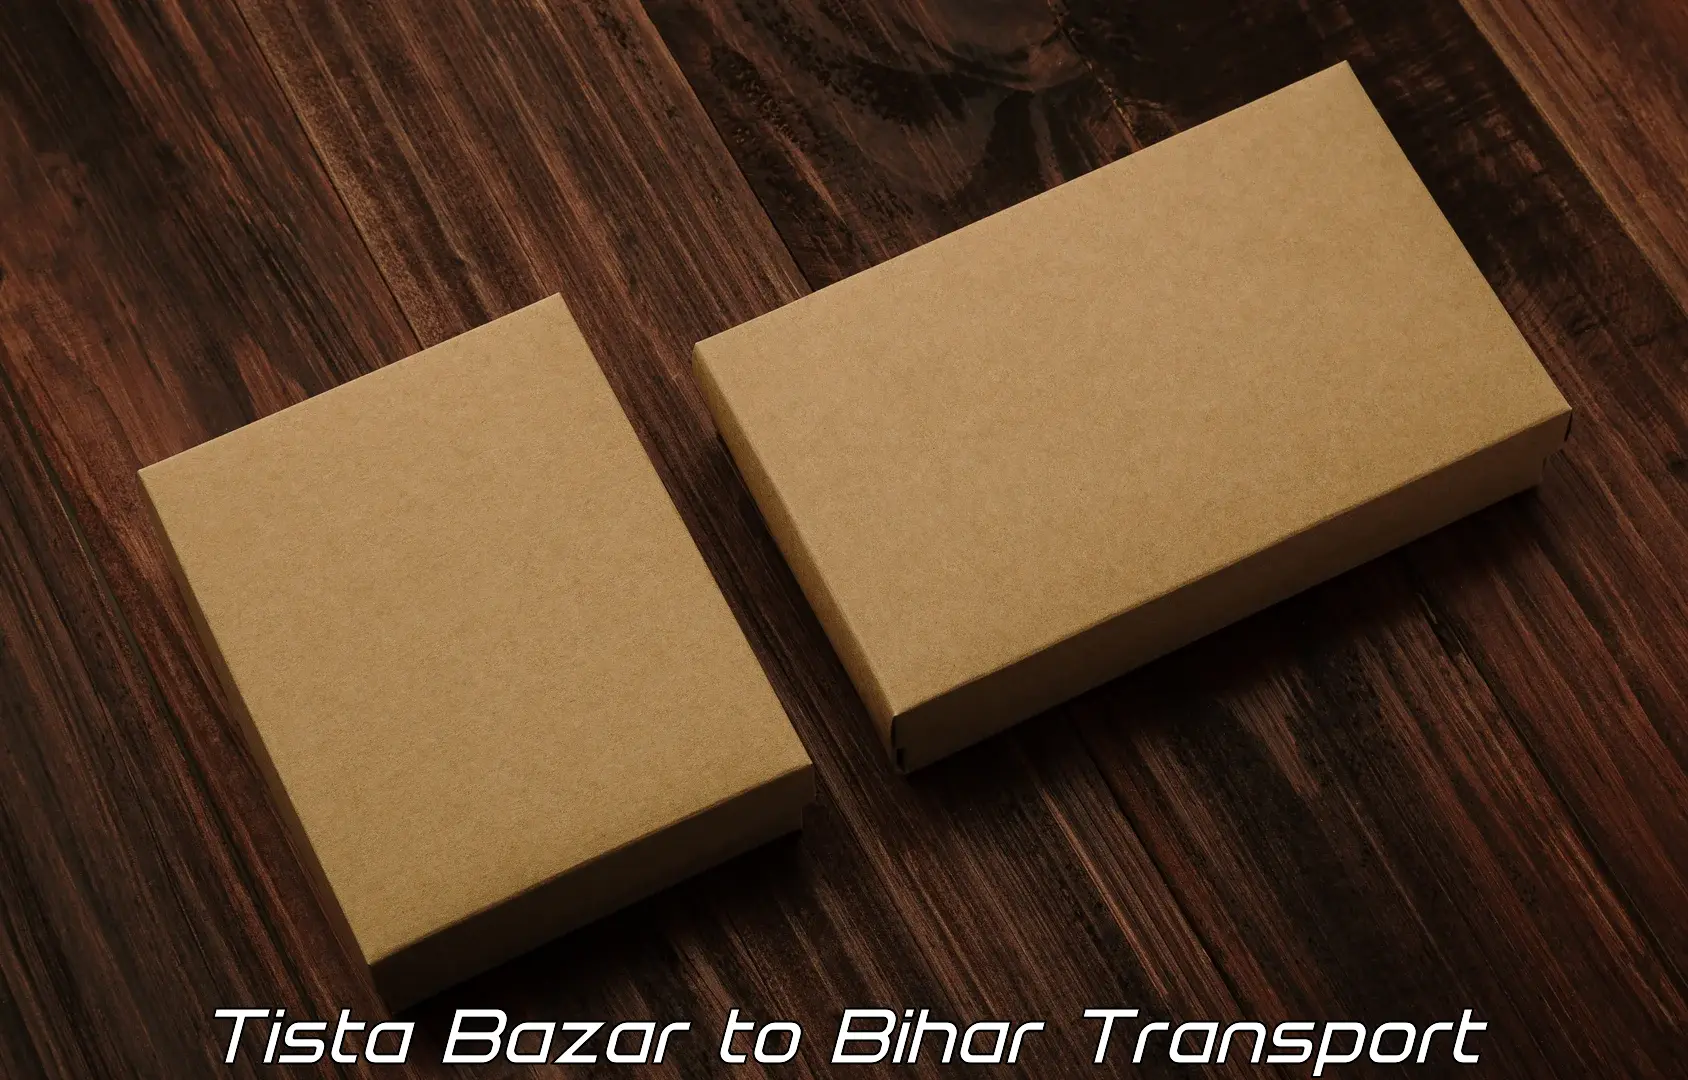 Two wheeler transport services Tista Bazar to Dhaka